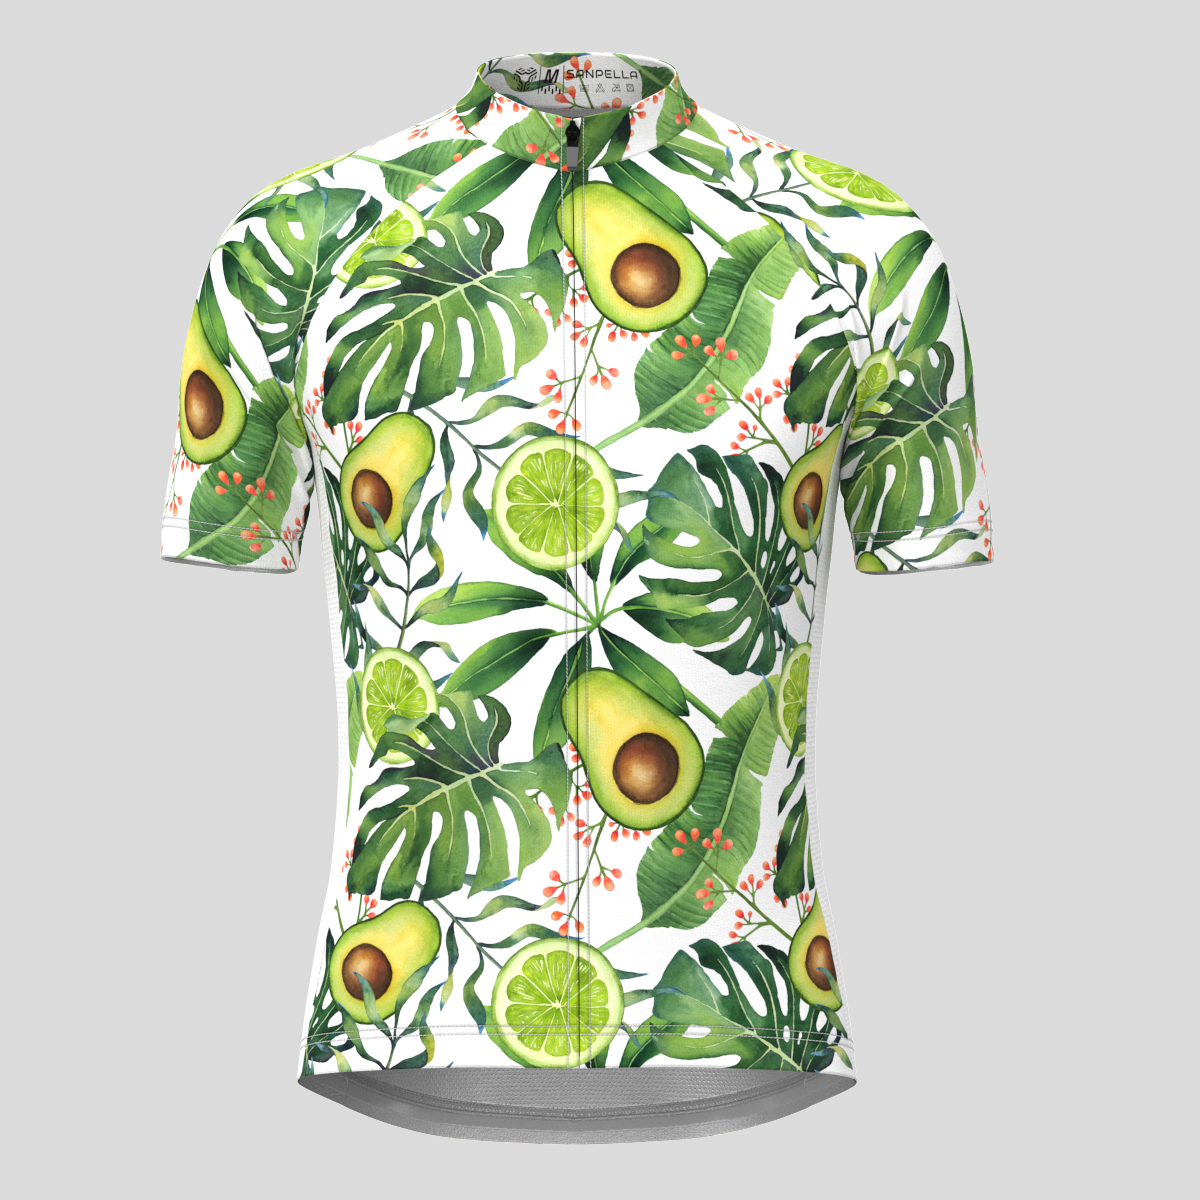 Avocado Lemon Tropical Plants Men's Cycling Jersey